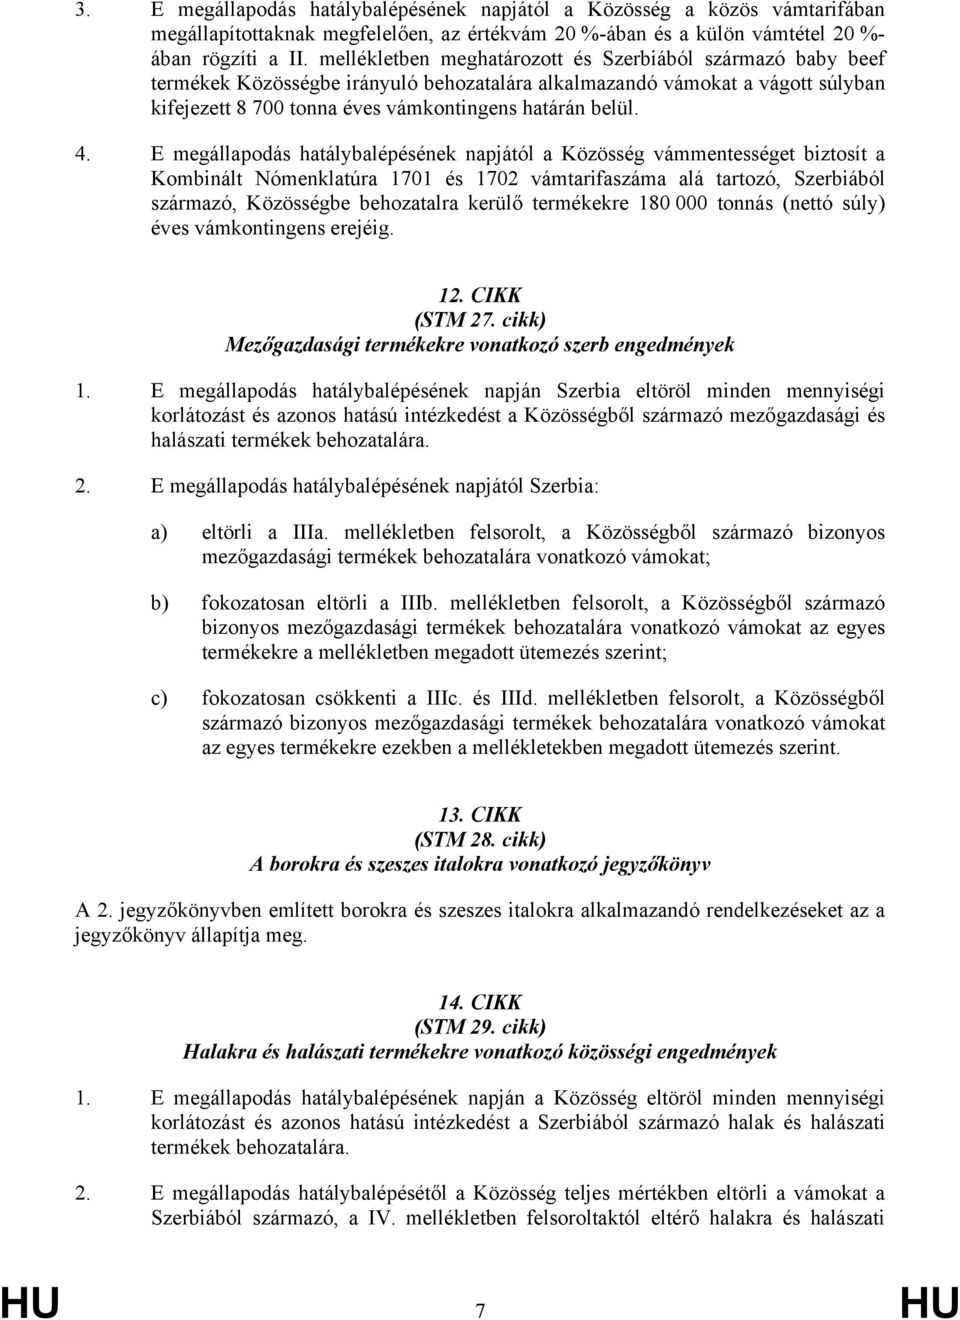 E megállapodás hatálybalépésének napjától a Közösség vámmentességet biztosít a Kombinált Nómenklatúra 1701 és 1702 vámtarifaszáma alá tartozó, Szerbiából származó, Közösségbe behozatalra kerülő